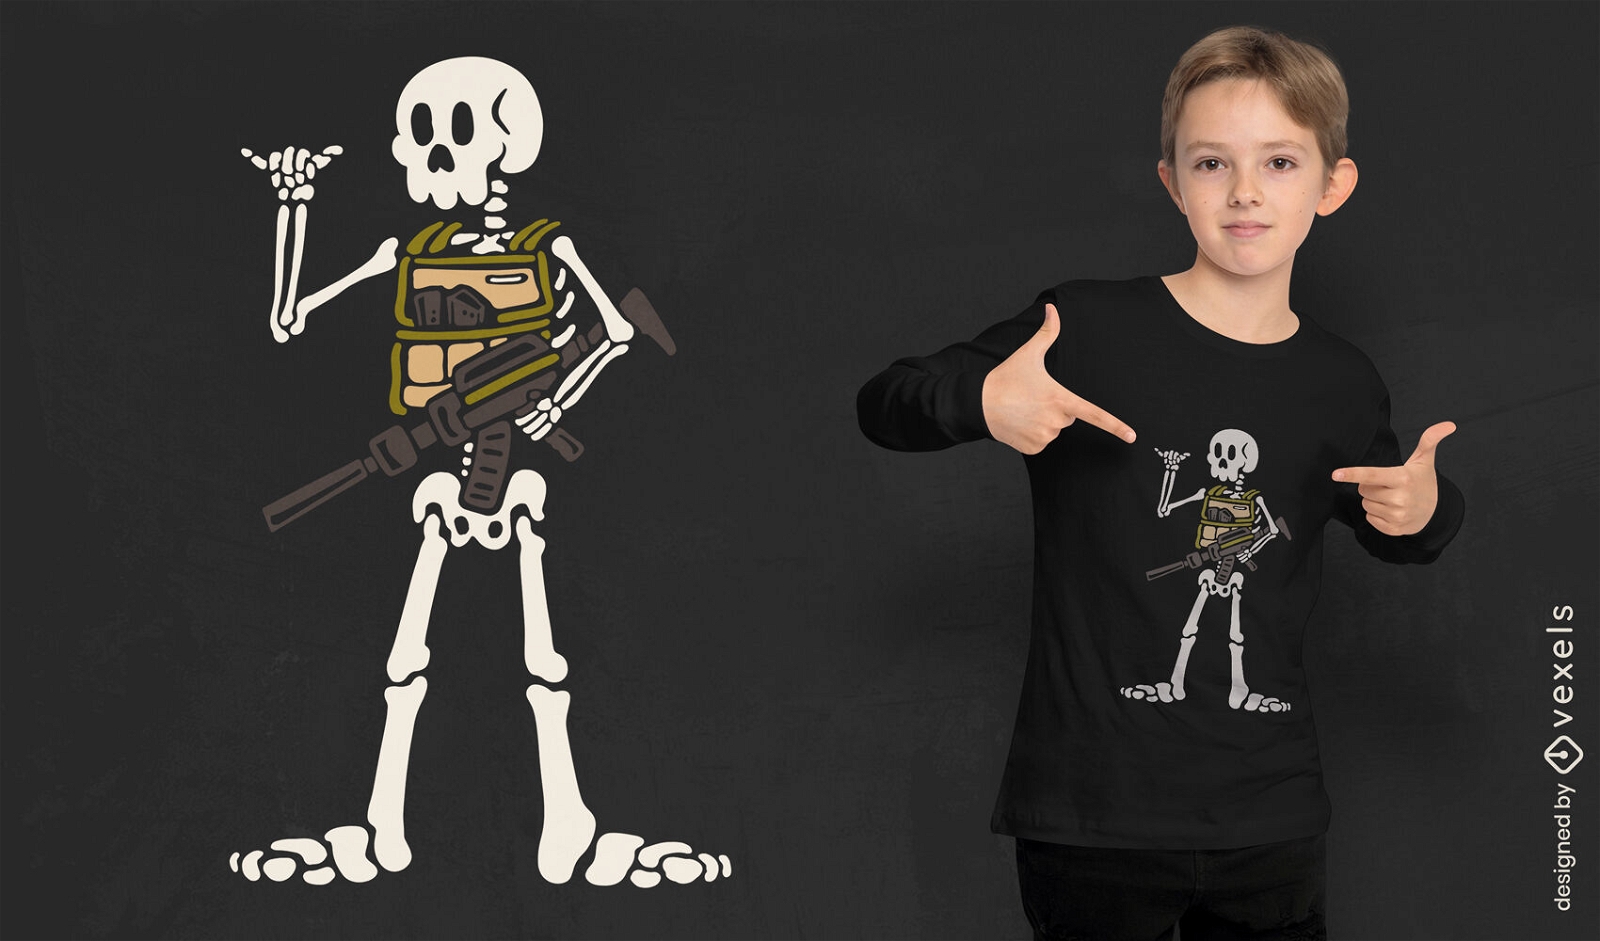 Skeleton soldier with gun t-shirt design